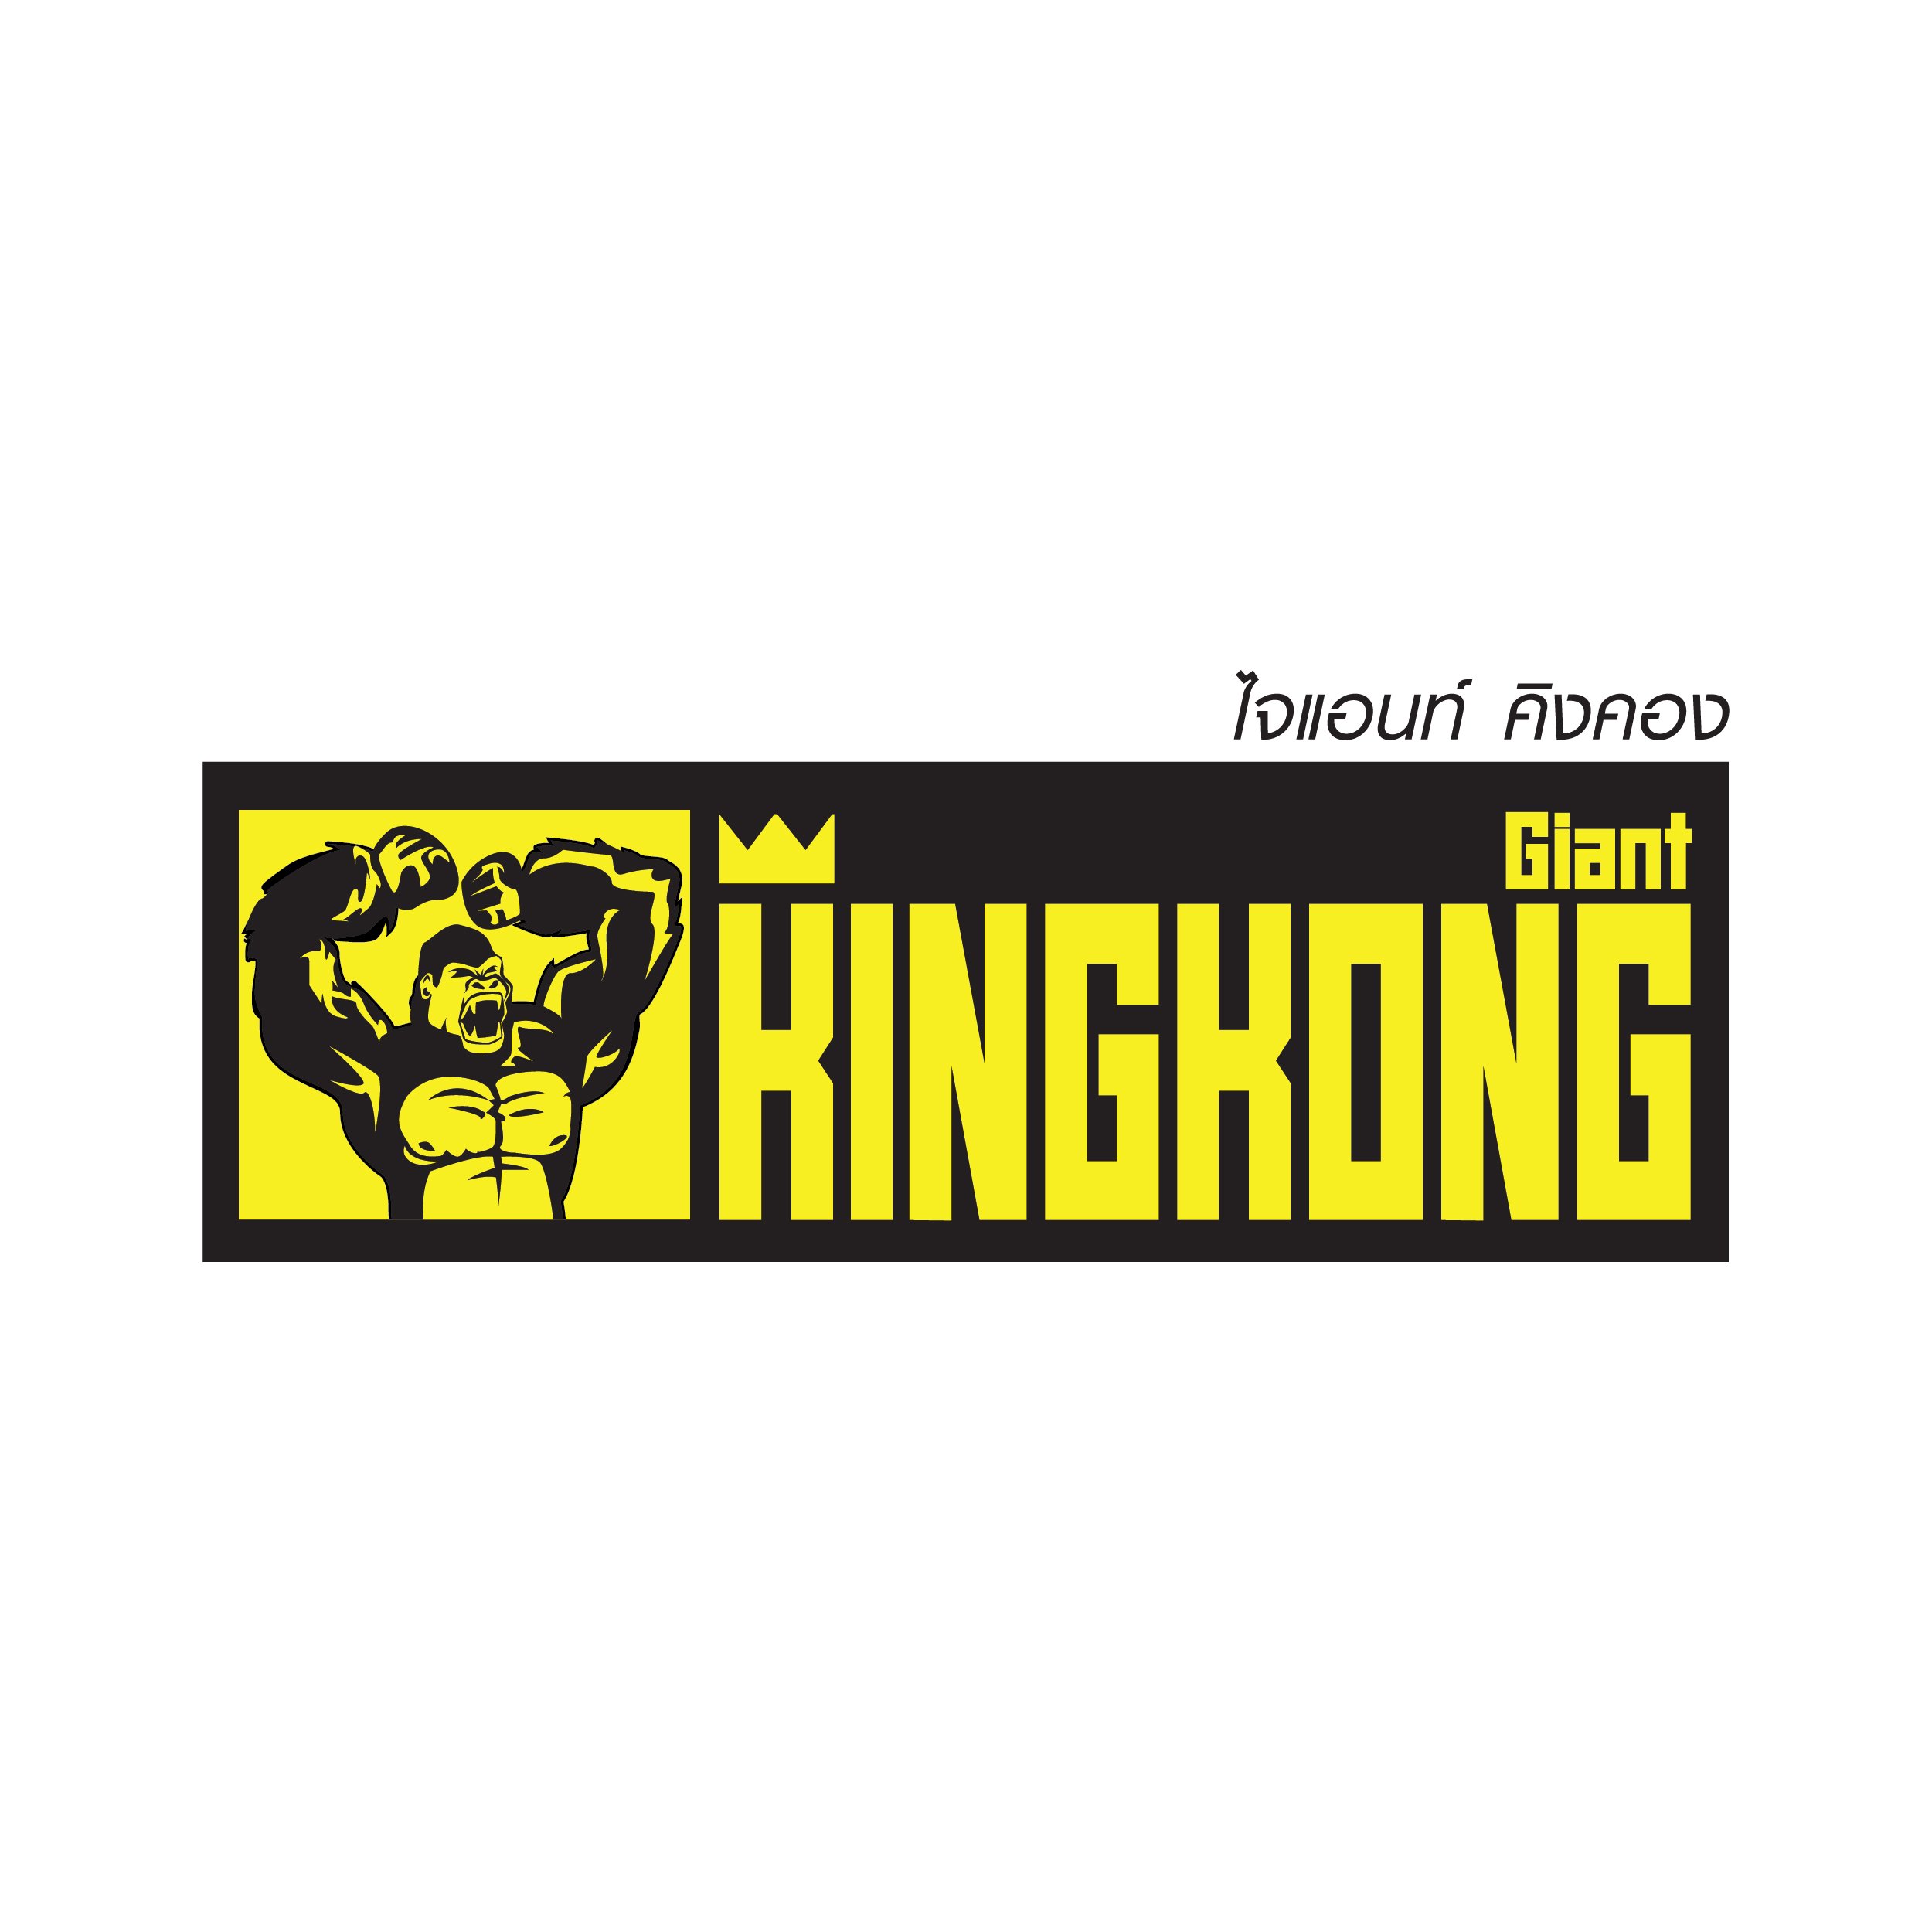 Giant Kingkong